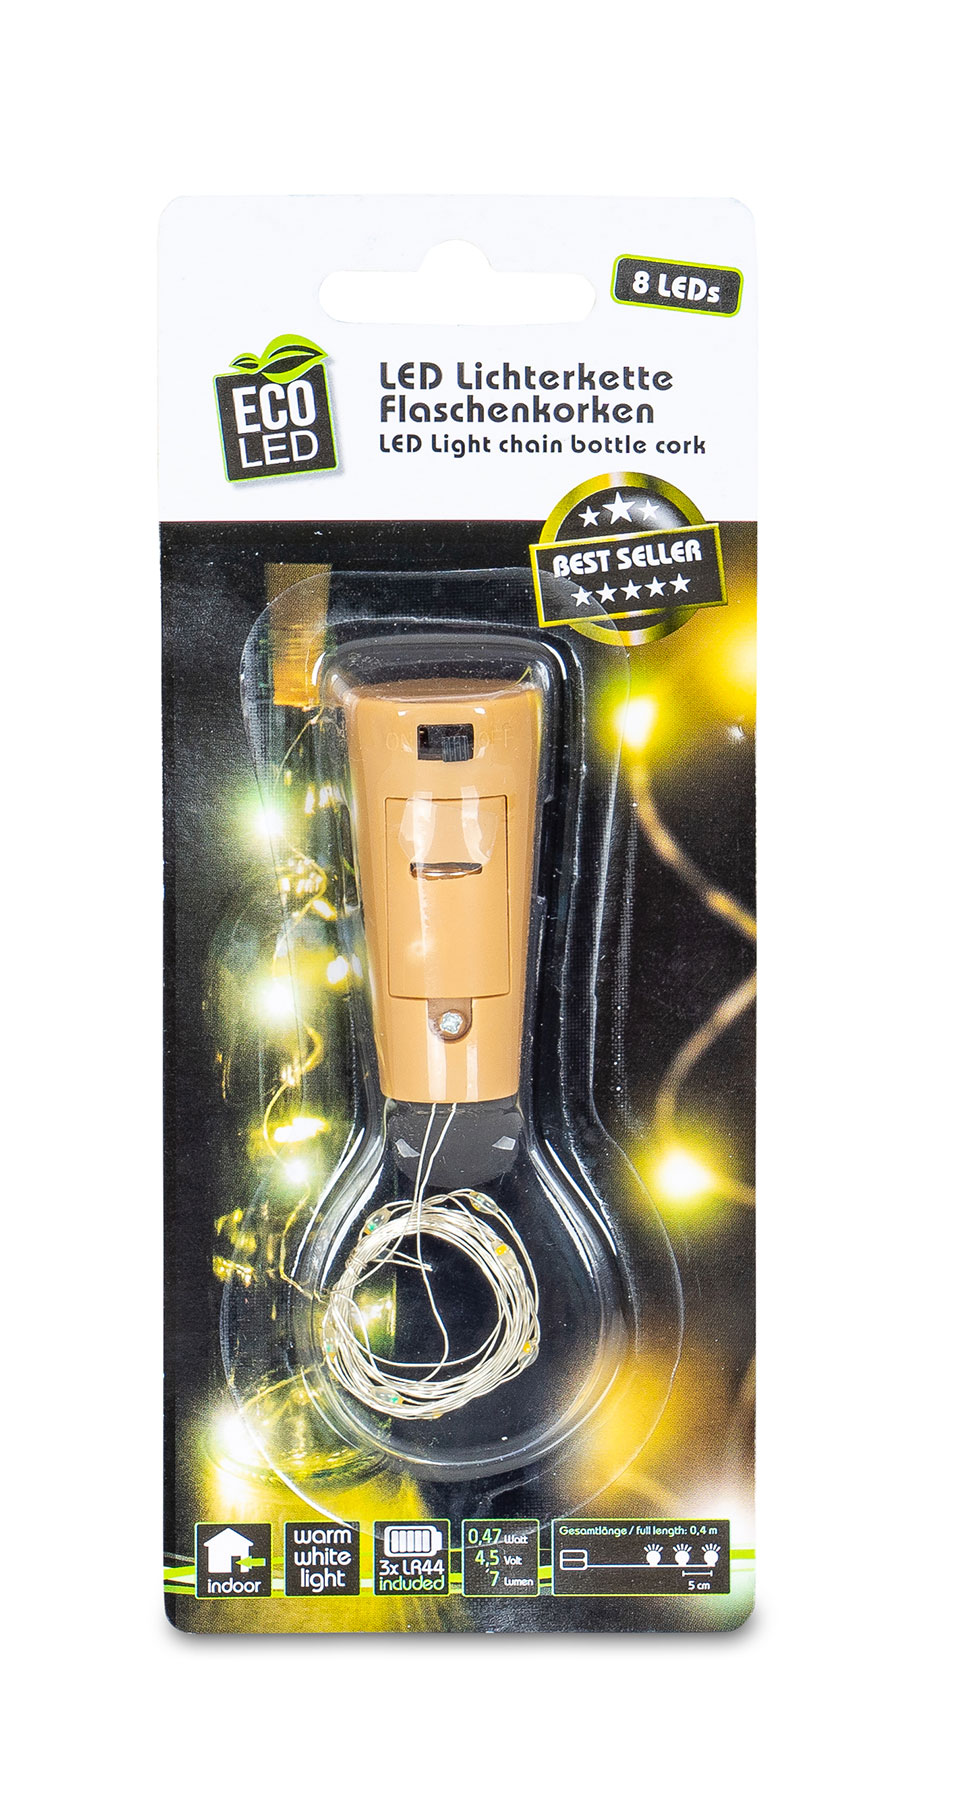 Lichterkette Flaschenkorken 8 LED Flaschenlicht Korkenlicht Partydeko Licht